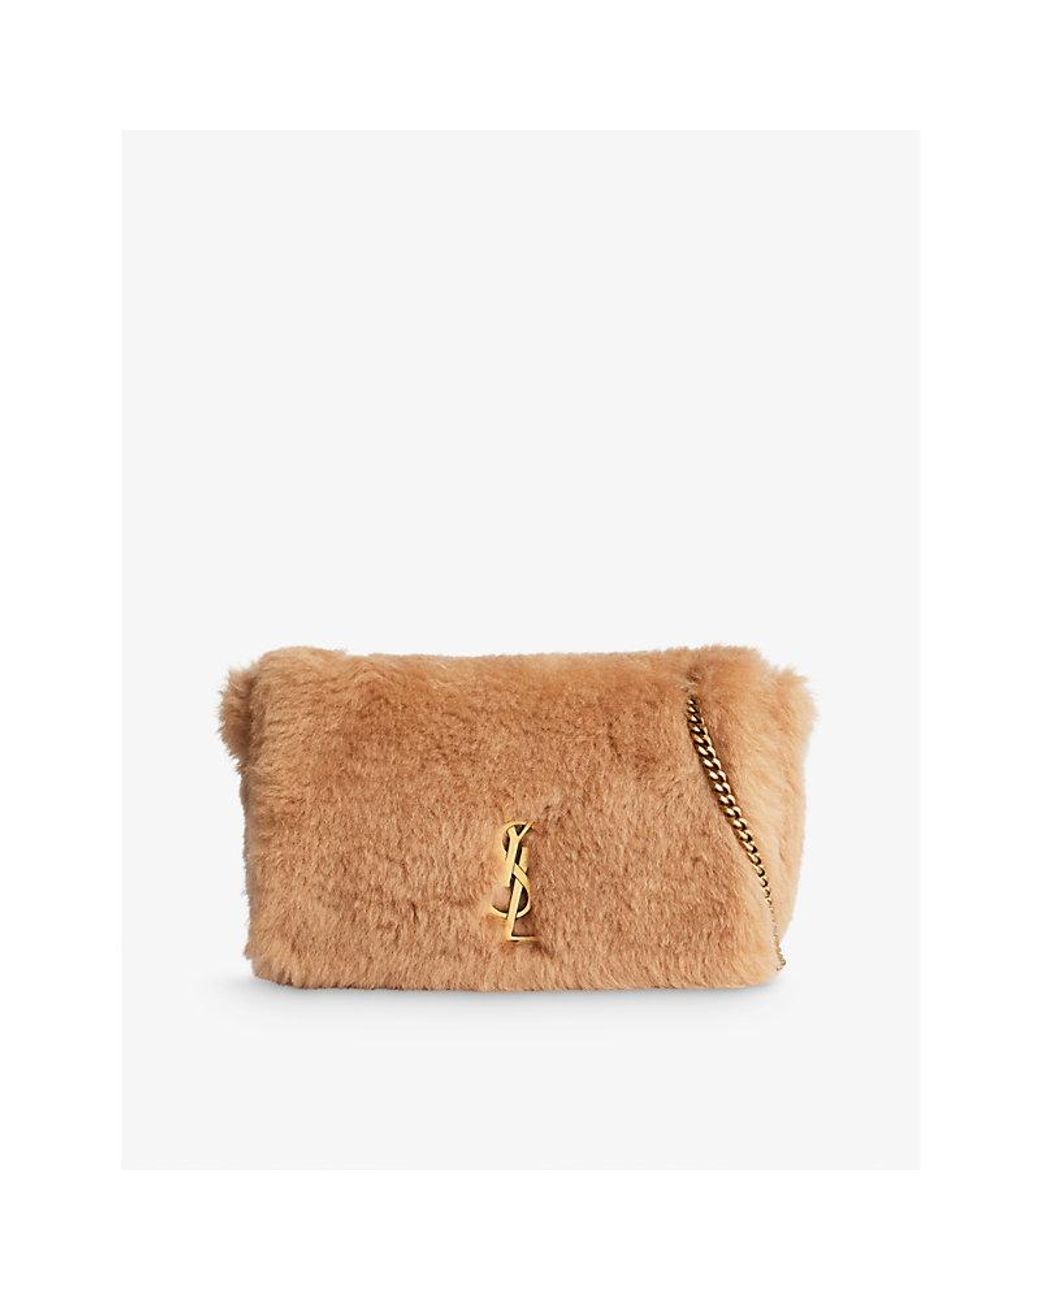 Saint Laurent Monogram Medium Suede Fringe Crossbody Bag Tan, $2,290, Neiman Marcus